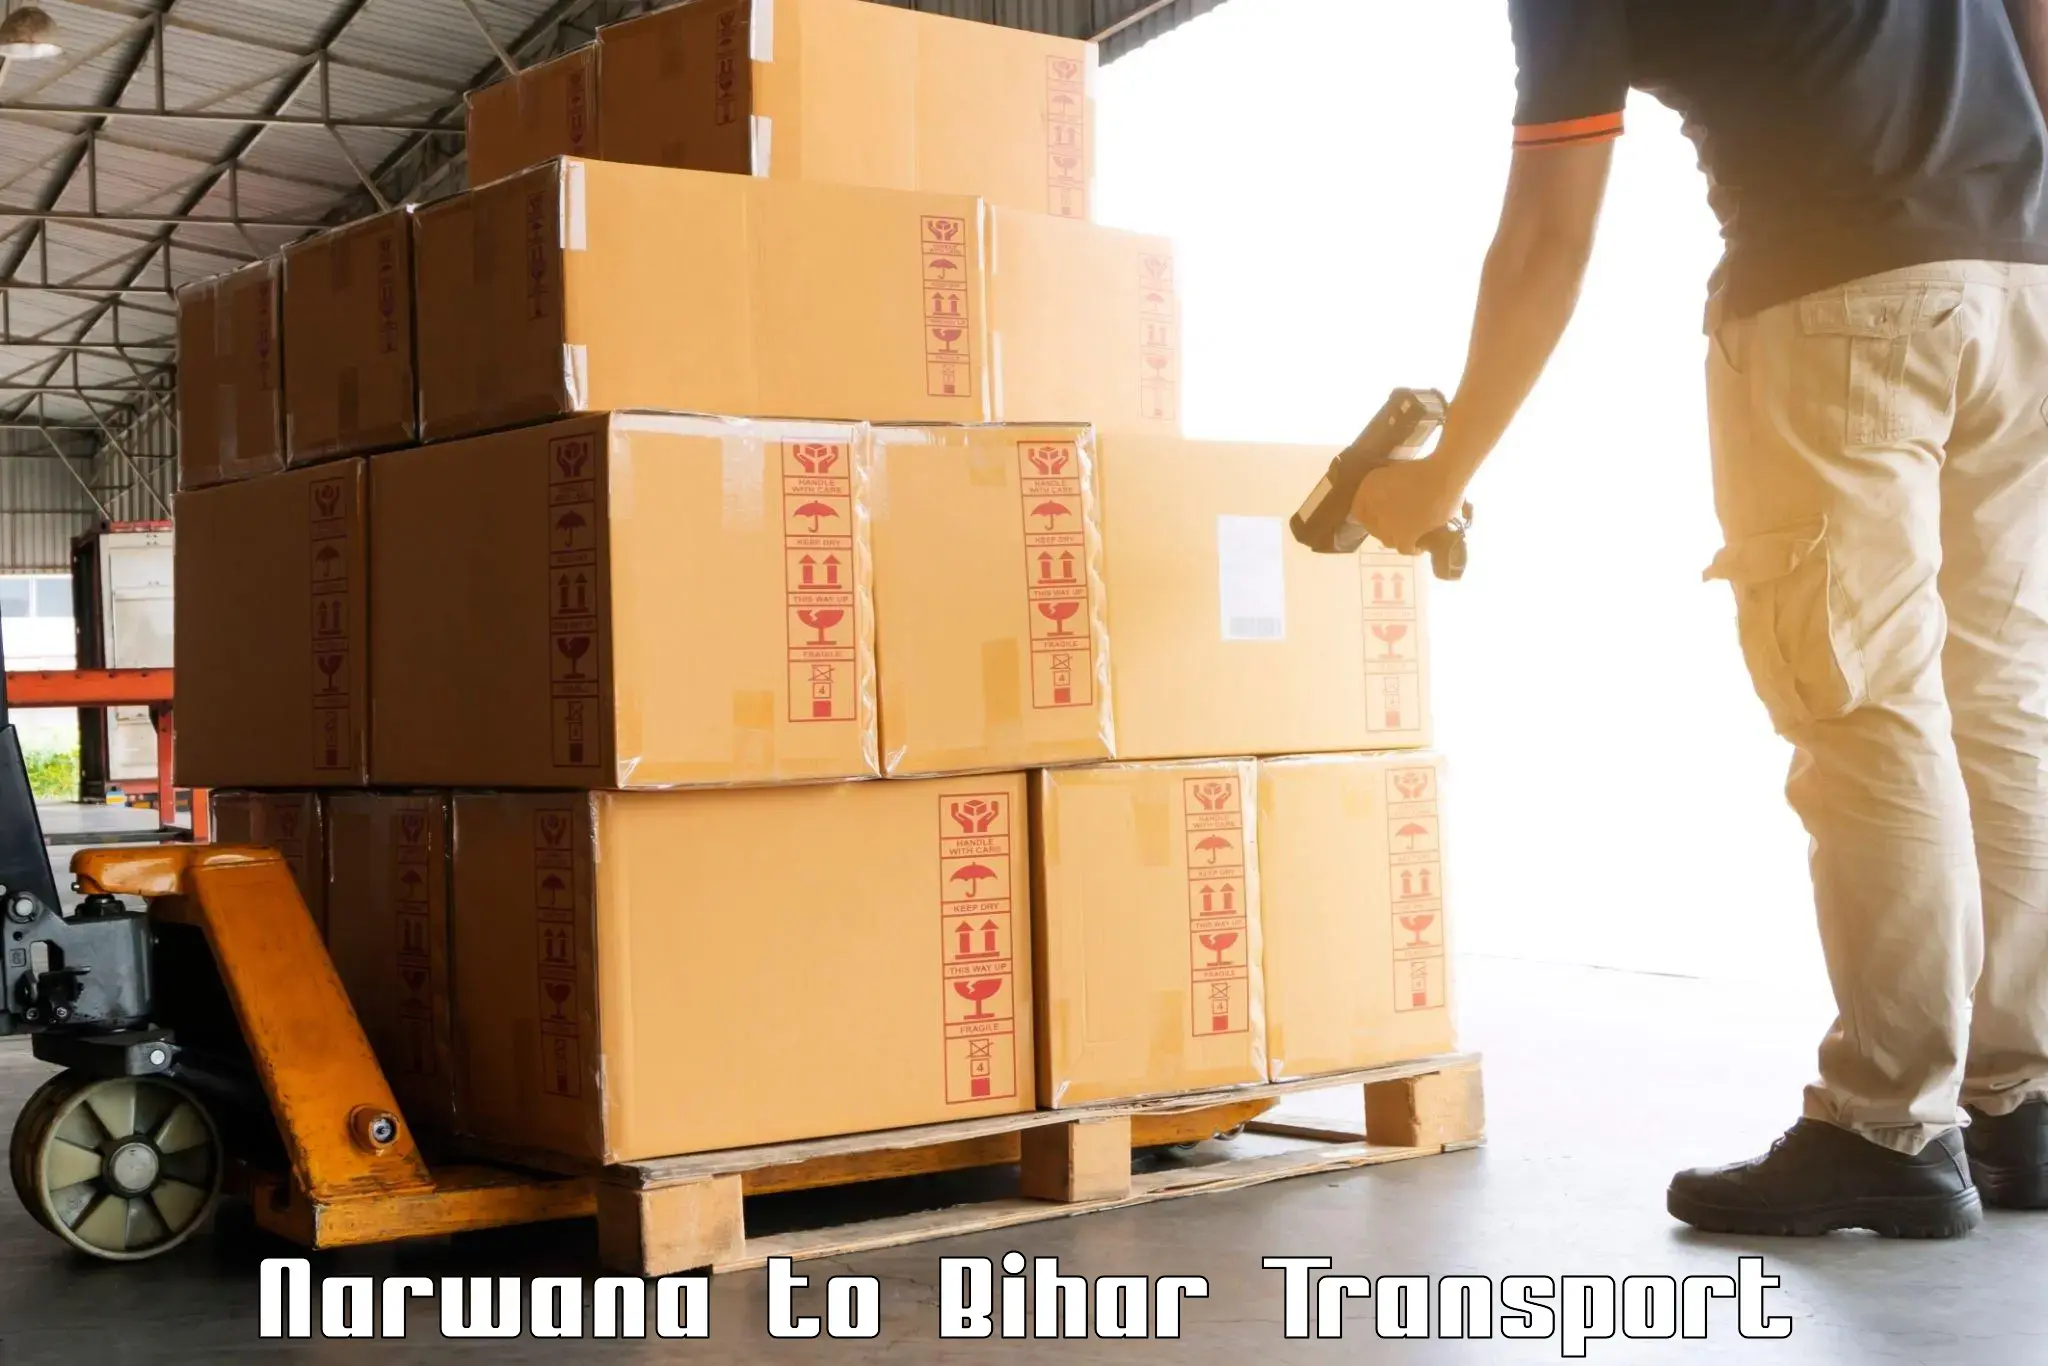 Online transport Narwana to Jhajha